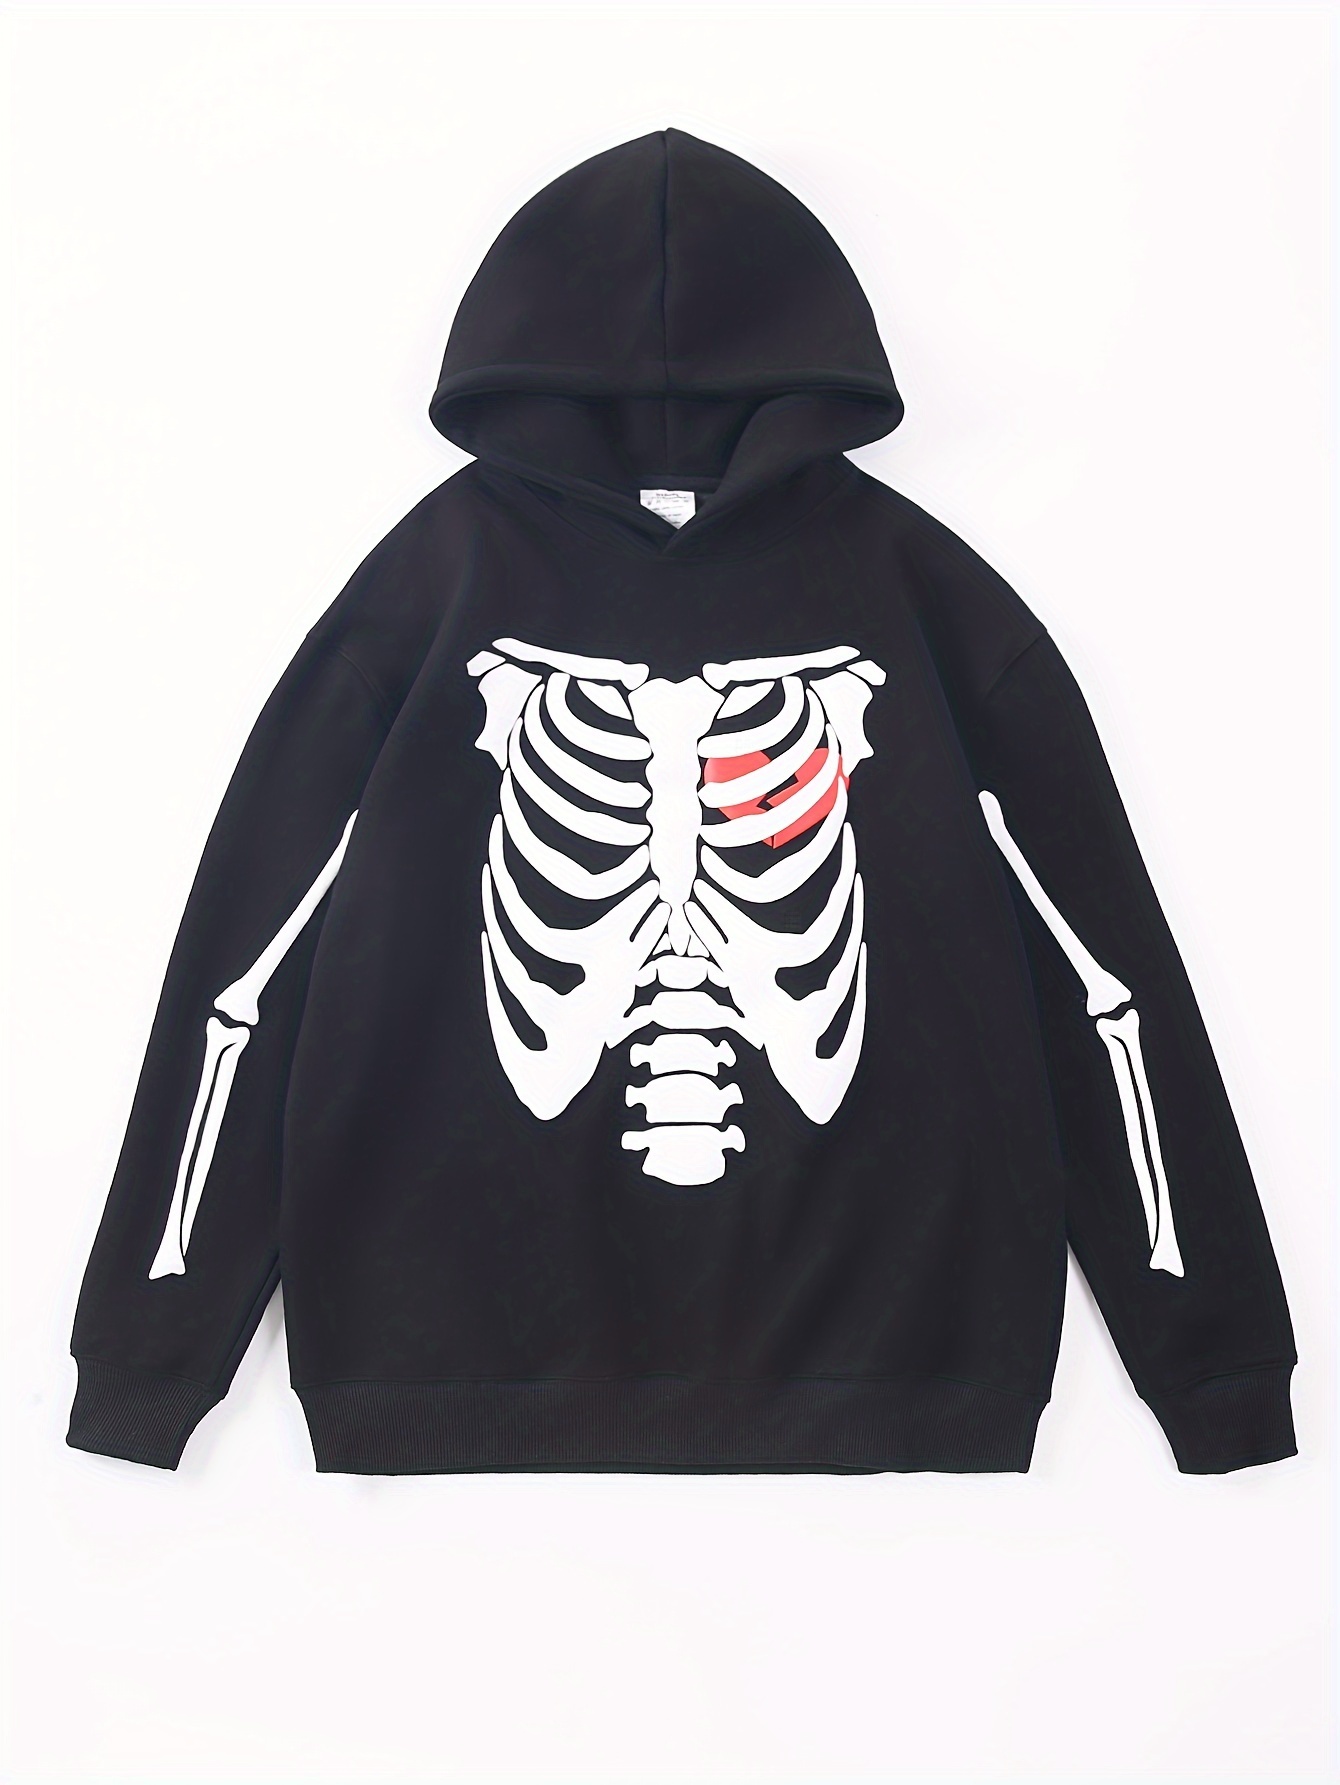 Skeleton Print Loose Drawstring Hoodie, Casual Long Sleeve Street Hoodies  Sweatshirt, Women's Clothing